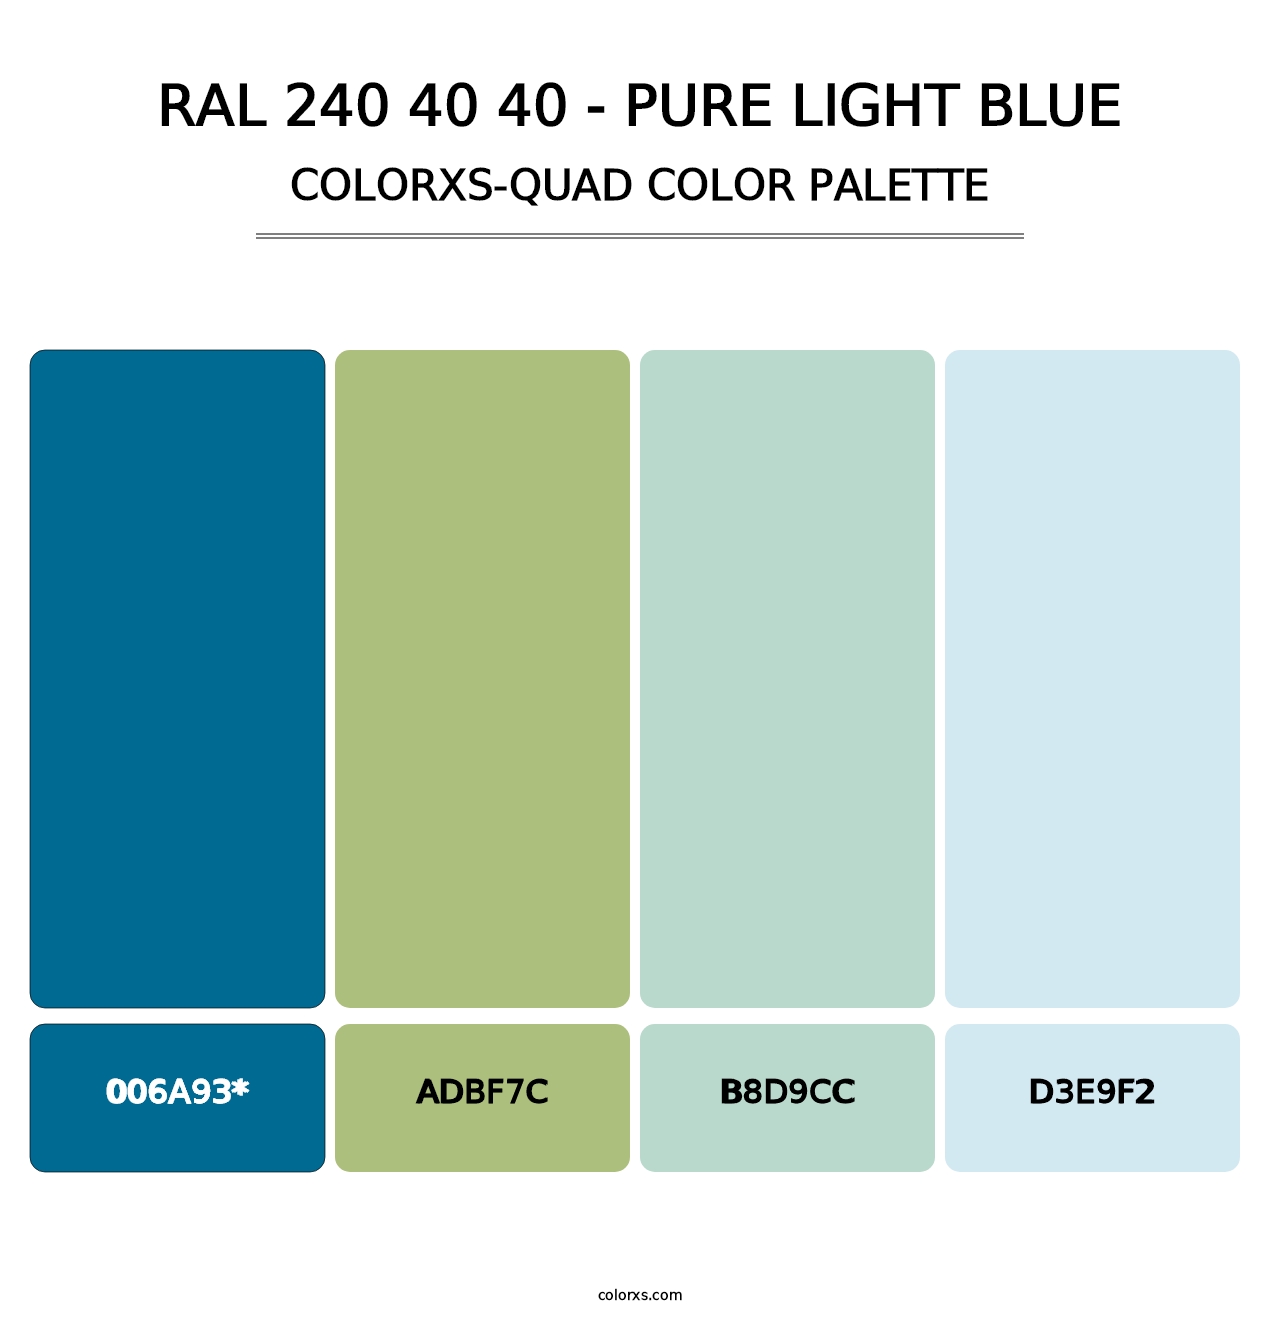 RAL 240 40 40 - Pure Light Blue - Colorxs Quad Palette